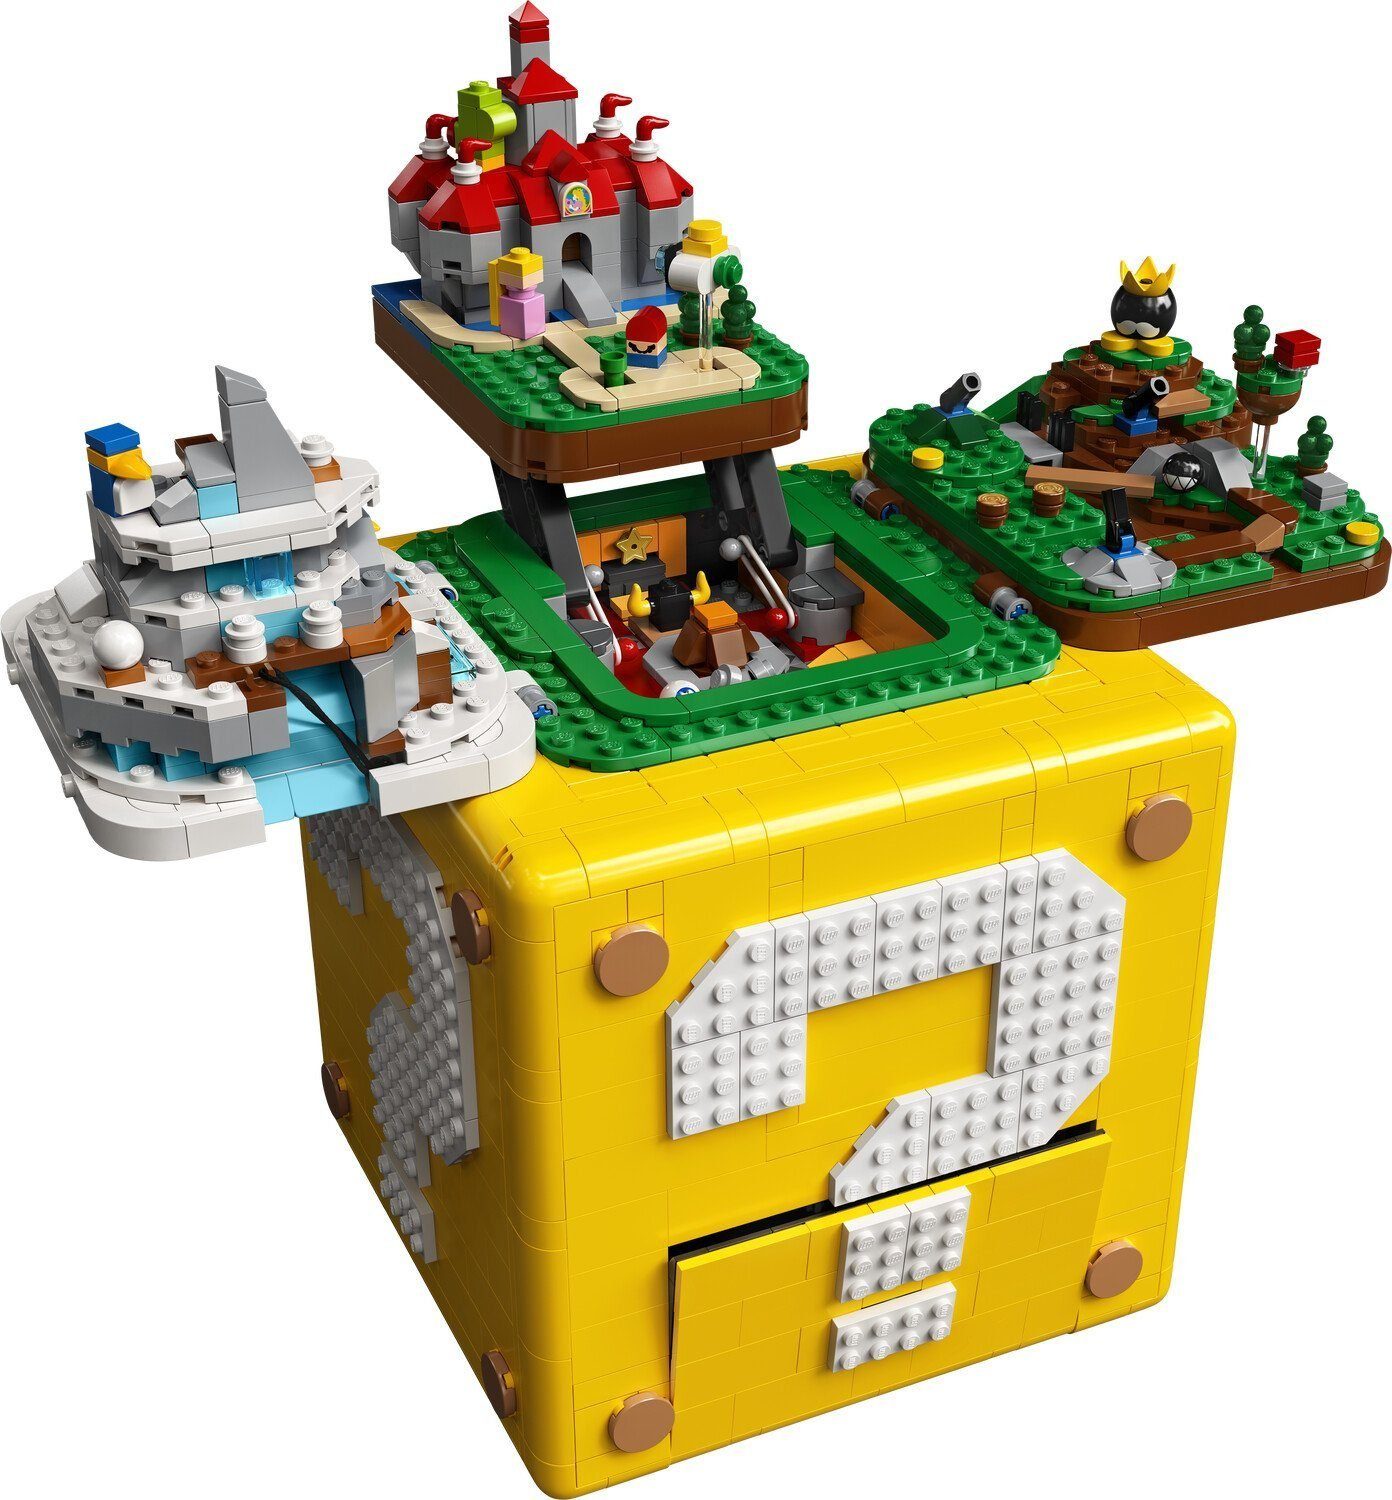 Super Spielbausteine 64 (2064 Mario Mario aus Fragezeichen-Block - LEGO® St) (71395), Super